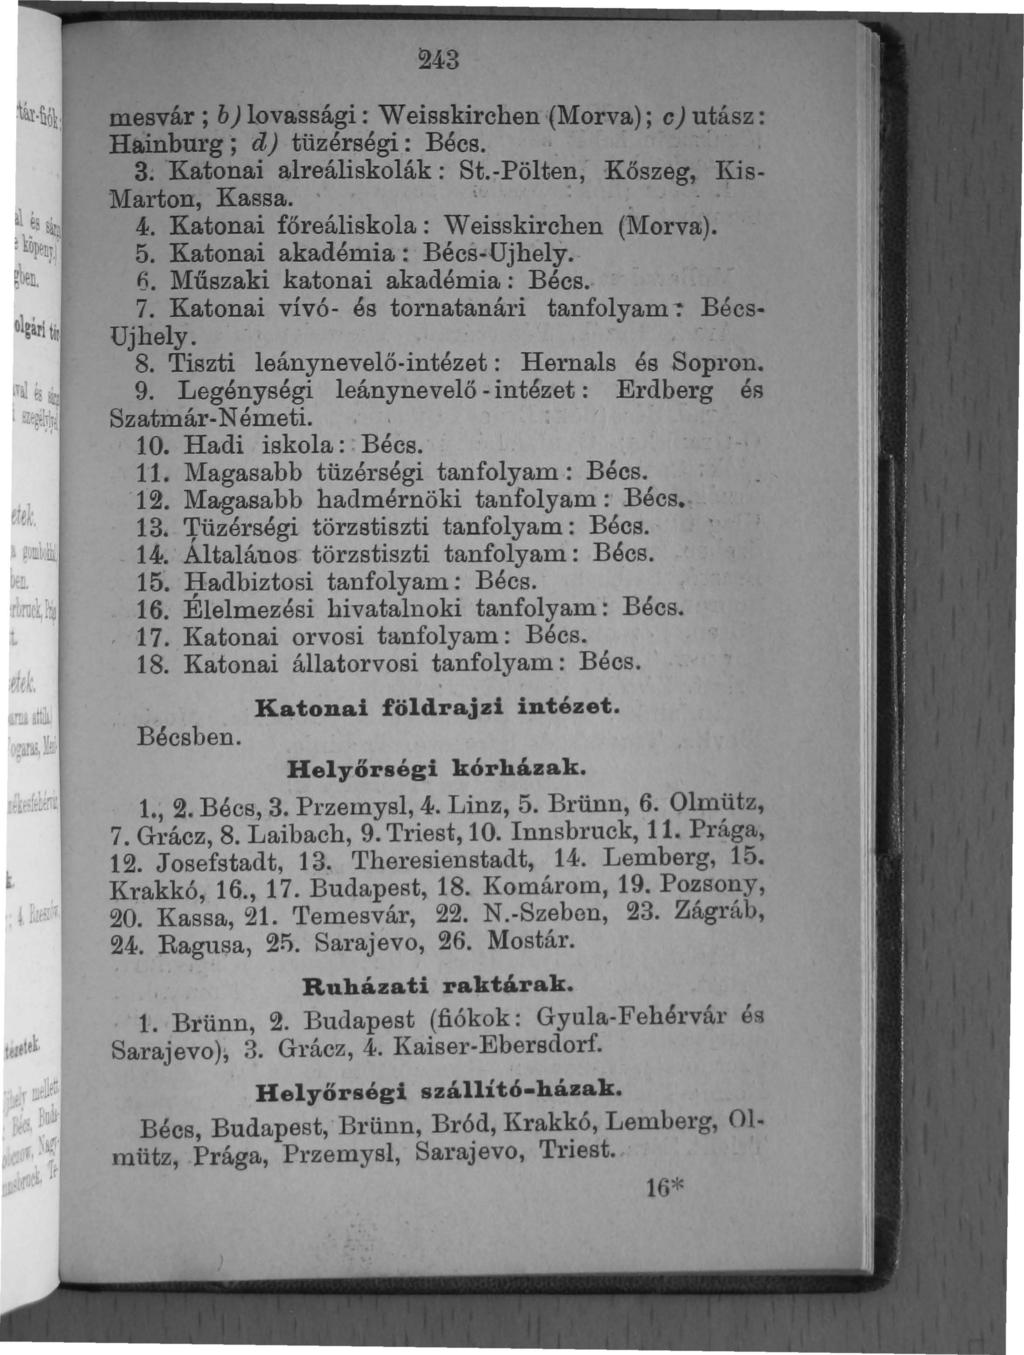 243 mesvár ; b) lovassági : Weisskirchen (Morva); c) utász: Hainburg; d) tüzérségi: Béc - 3. Katonai alreáliskolák: St.-pölten, Kőszeg, Kis- Marton, Kassa. t 4.